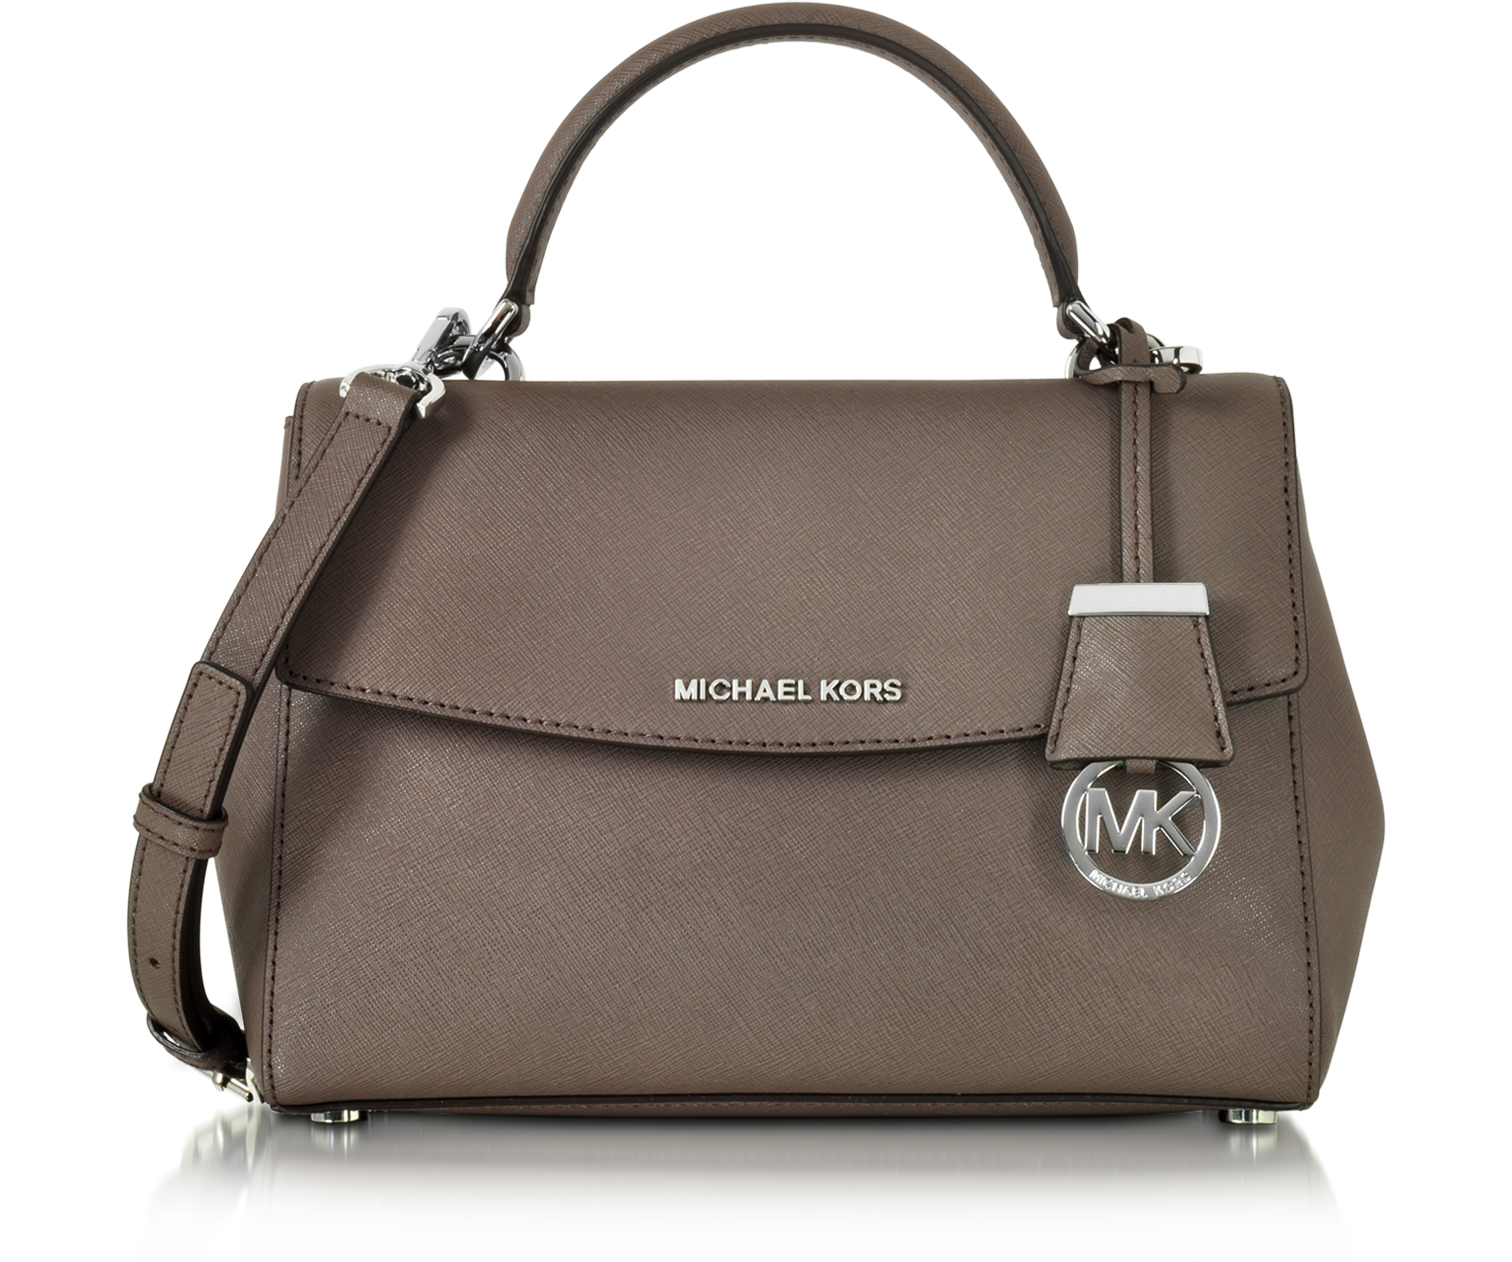 mk handbags australia